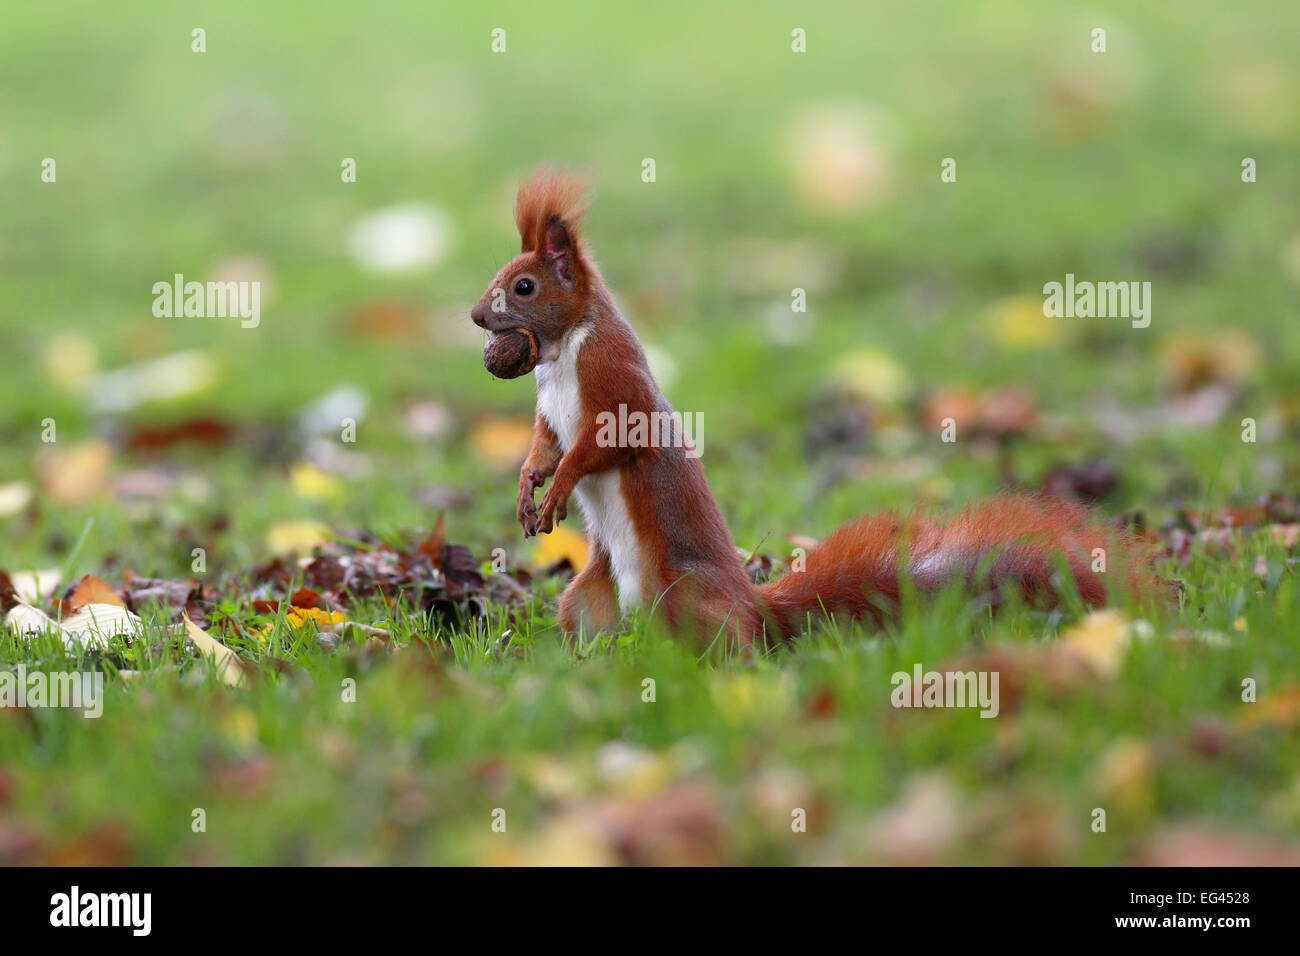 Red scoiattolo (Sciurus vulgaris), in posizione eretta con un dado, in un parco, Lipsia, Sassonia, Germania Foto Stock